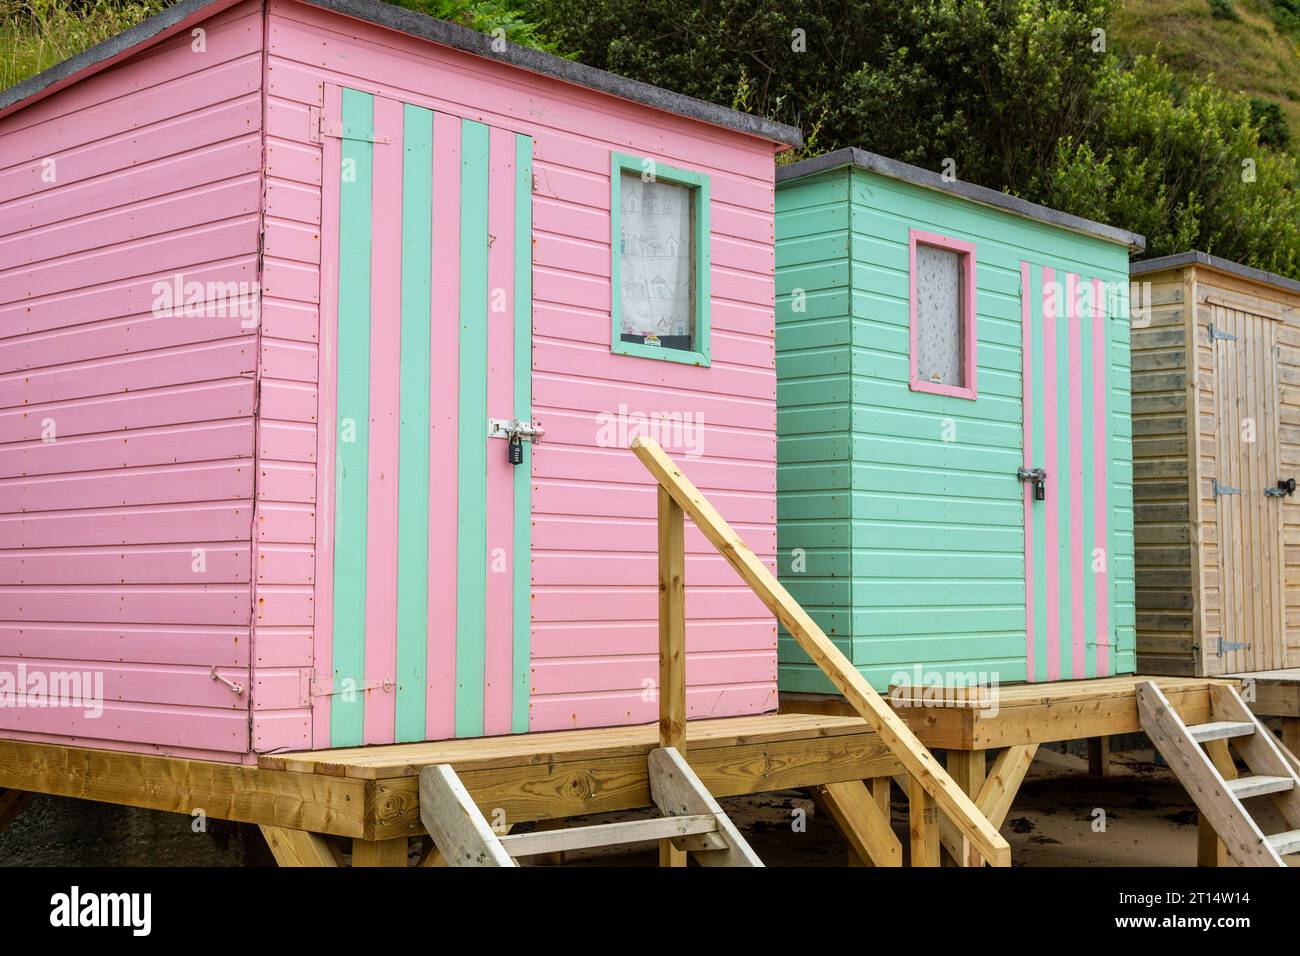 Colourful Beach huts on Porth Nefyn beach, Llyn Peninsula, Gwynedd, Wales Stock Photo